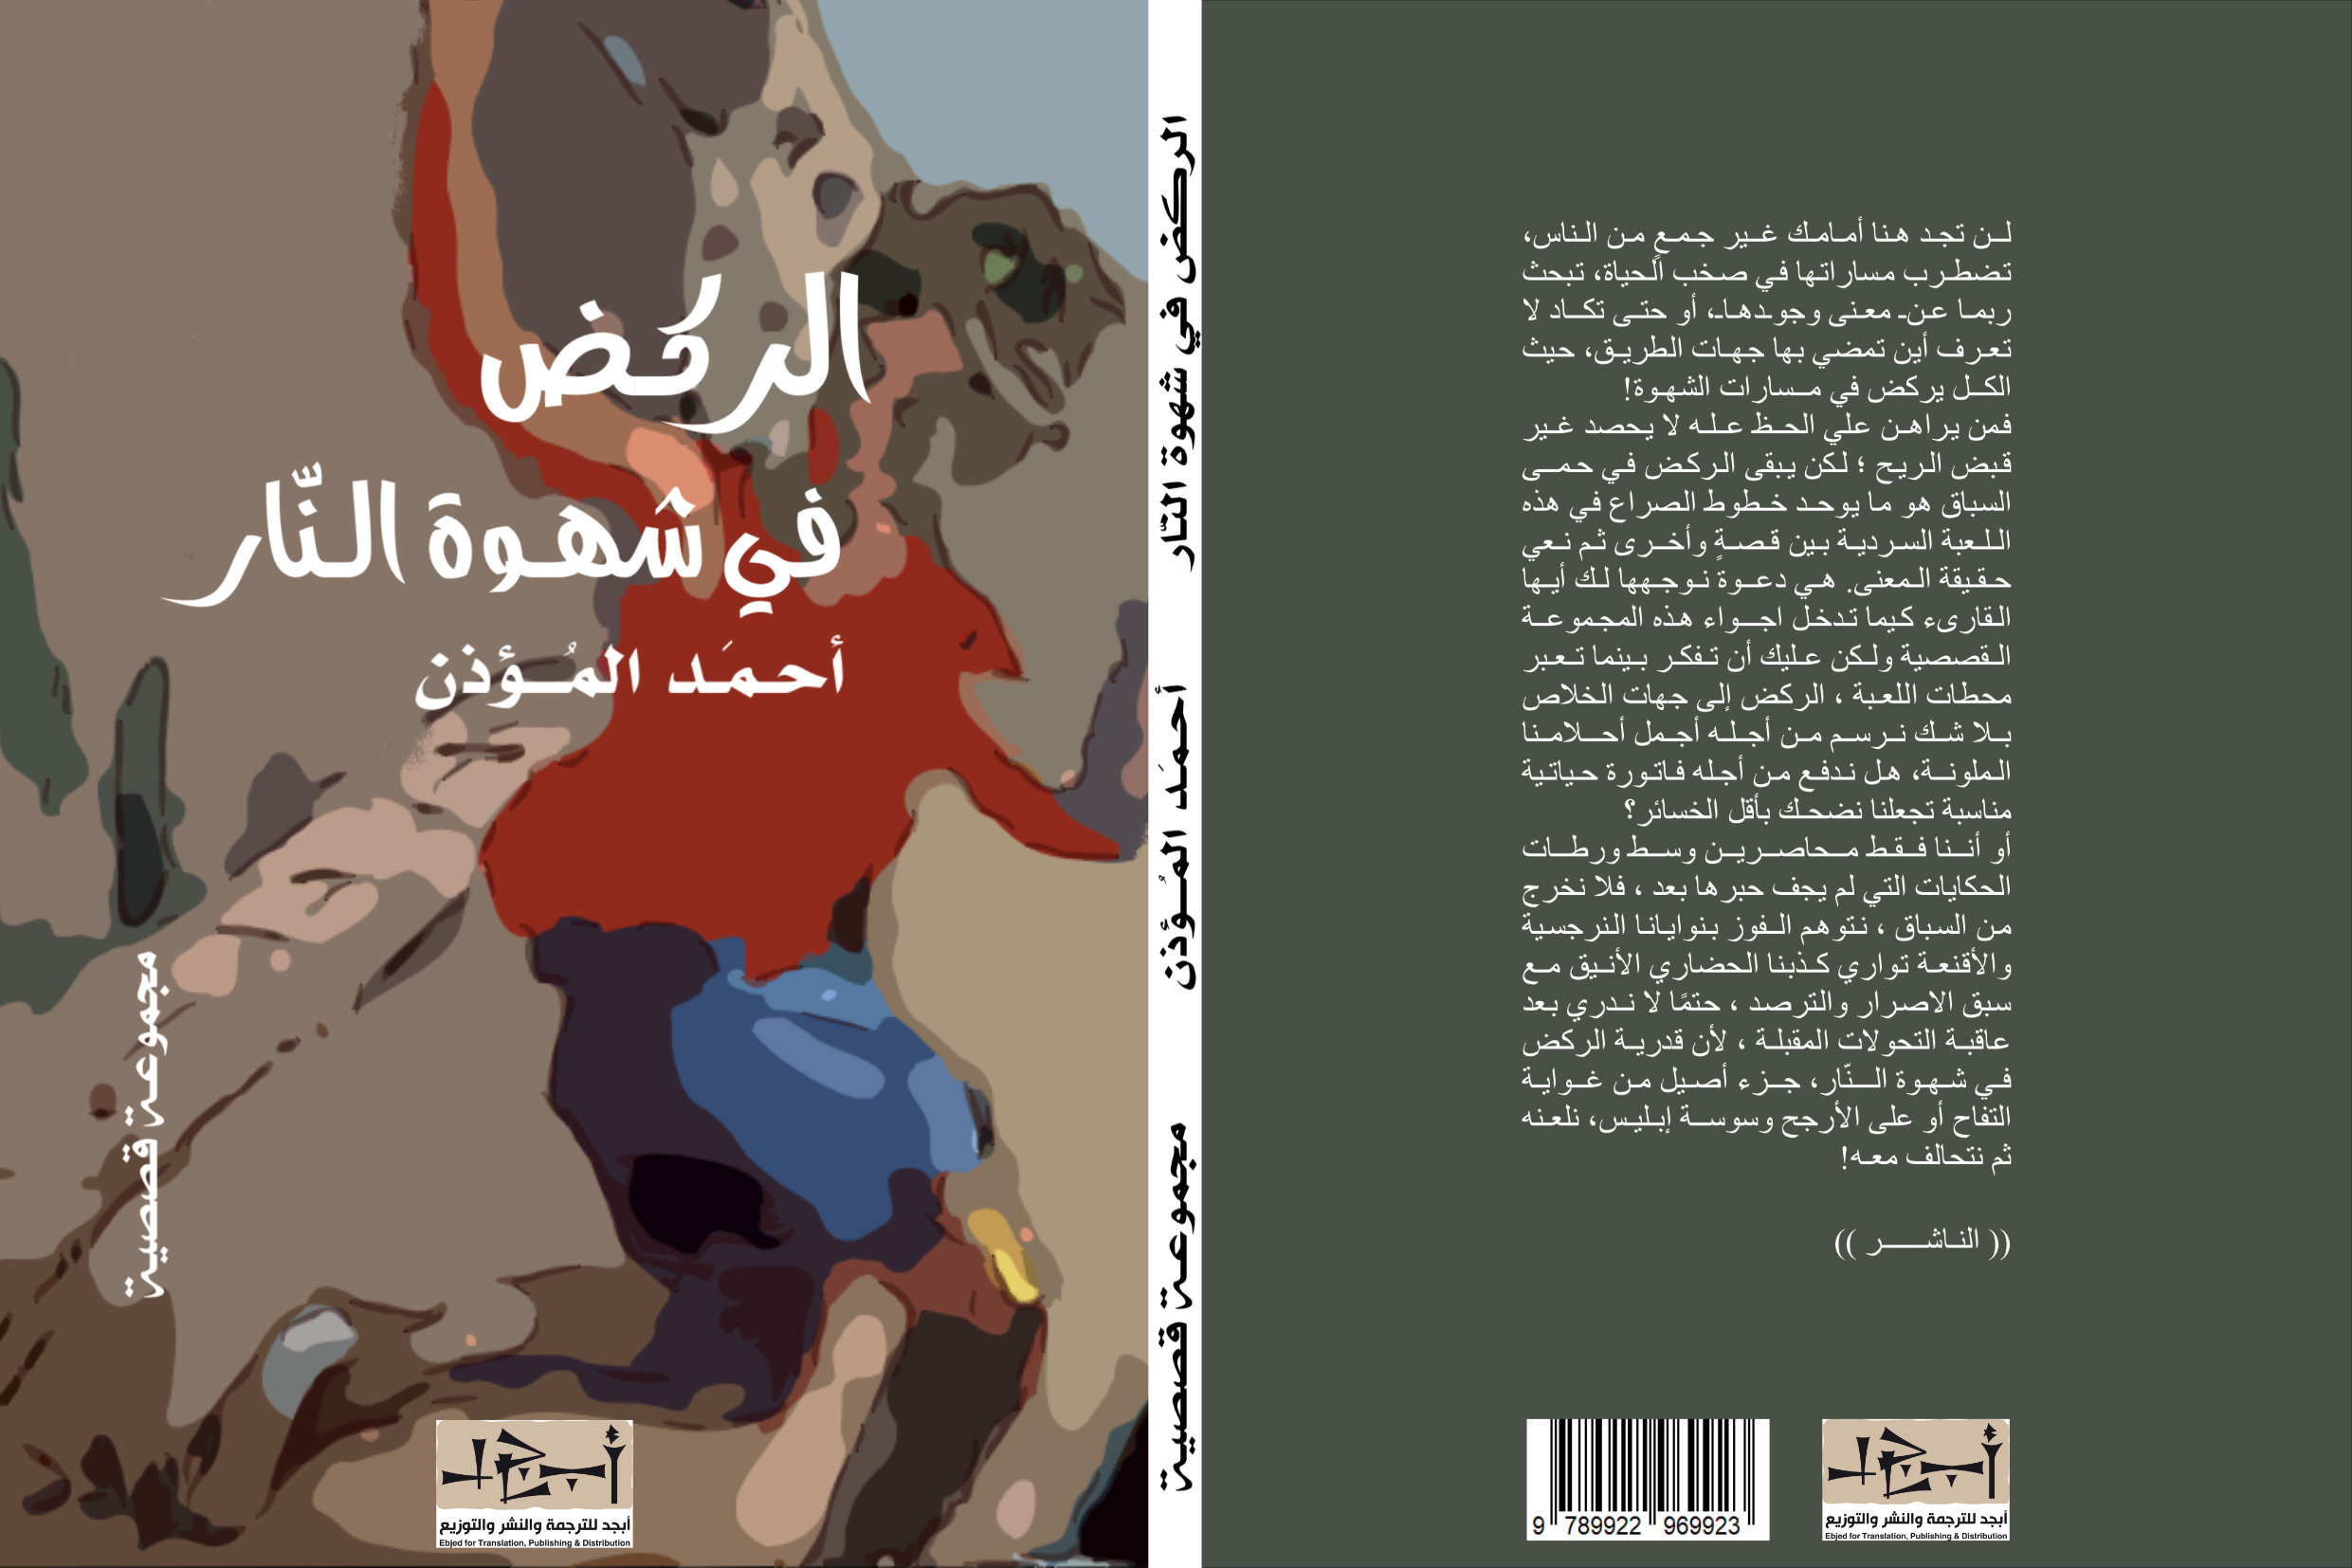 الركض في شهوة النار - مجموعة قصصية - الكاتب احمد المؤذن